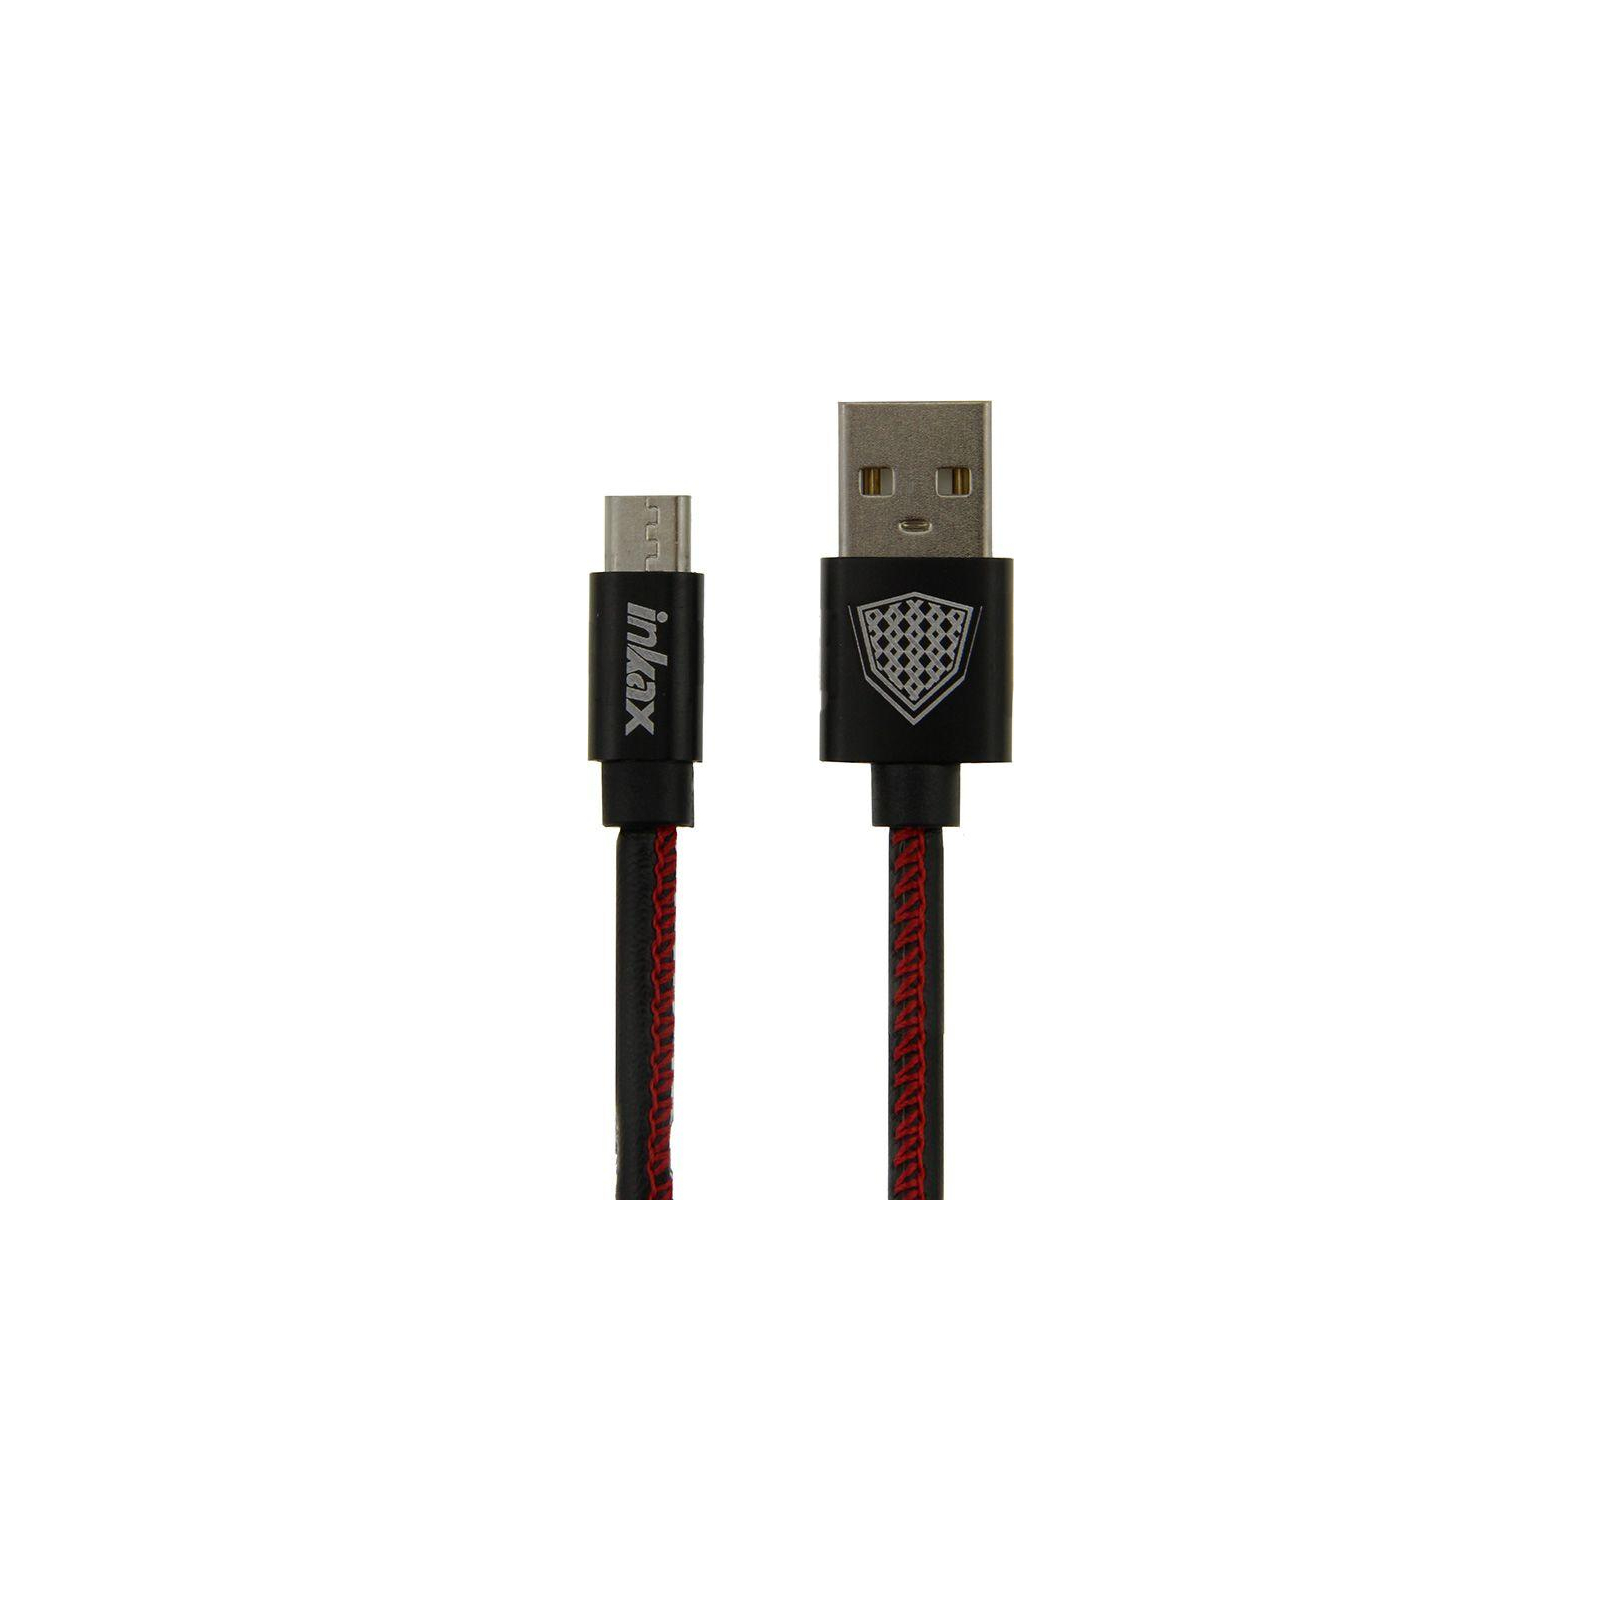 Дата кабель USB 2.0 AM to Micro 5P 1.0m CK-44 Black Inkax (F_62246)